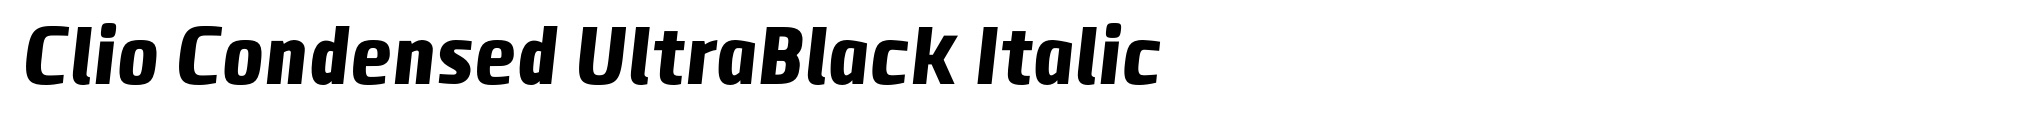 Clio Condensed UltraBlack Italic image